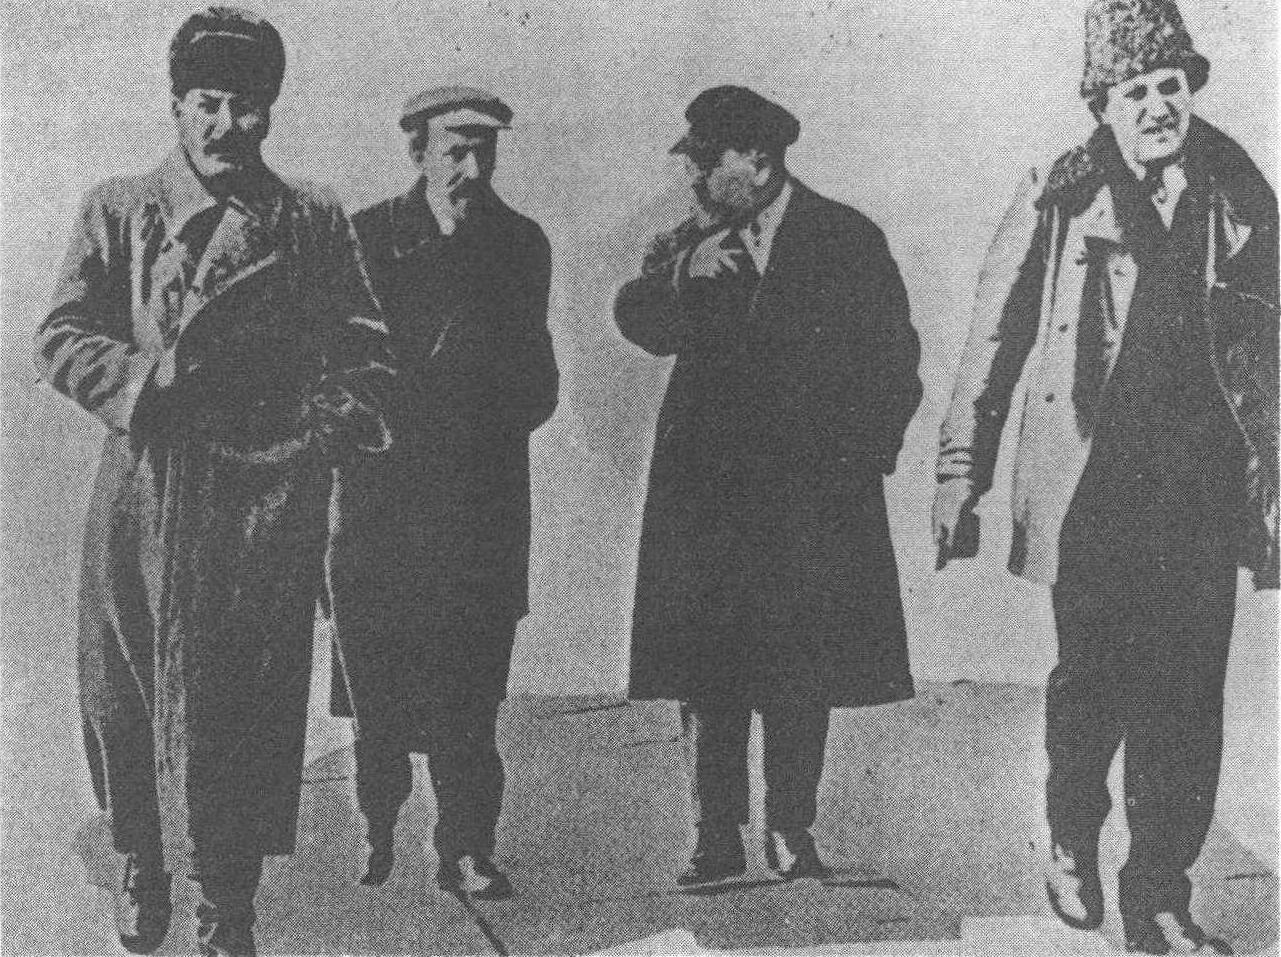 肃反浪潮席卷苏联——季诺维也夫和加米涅夫被判死刑